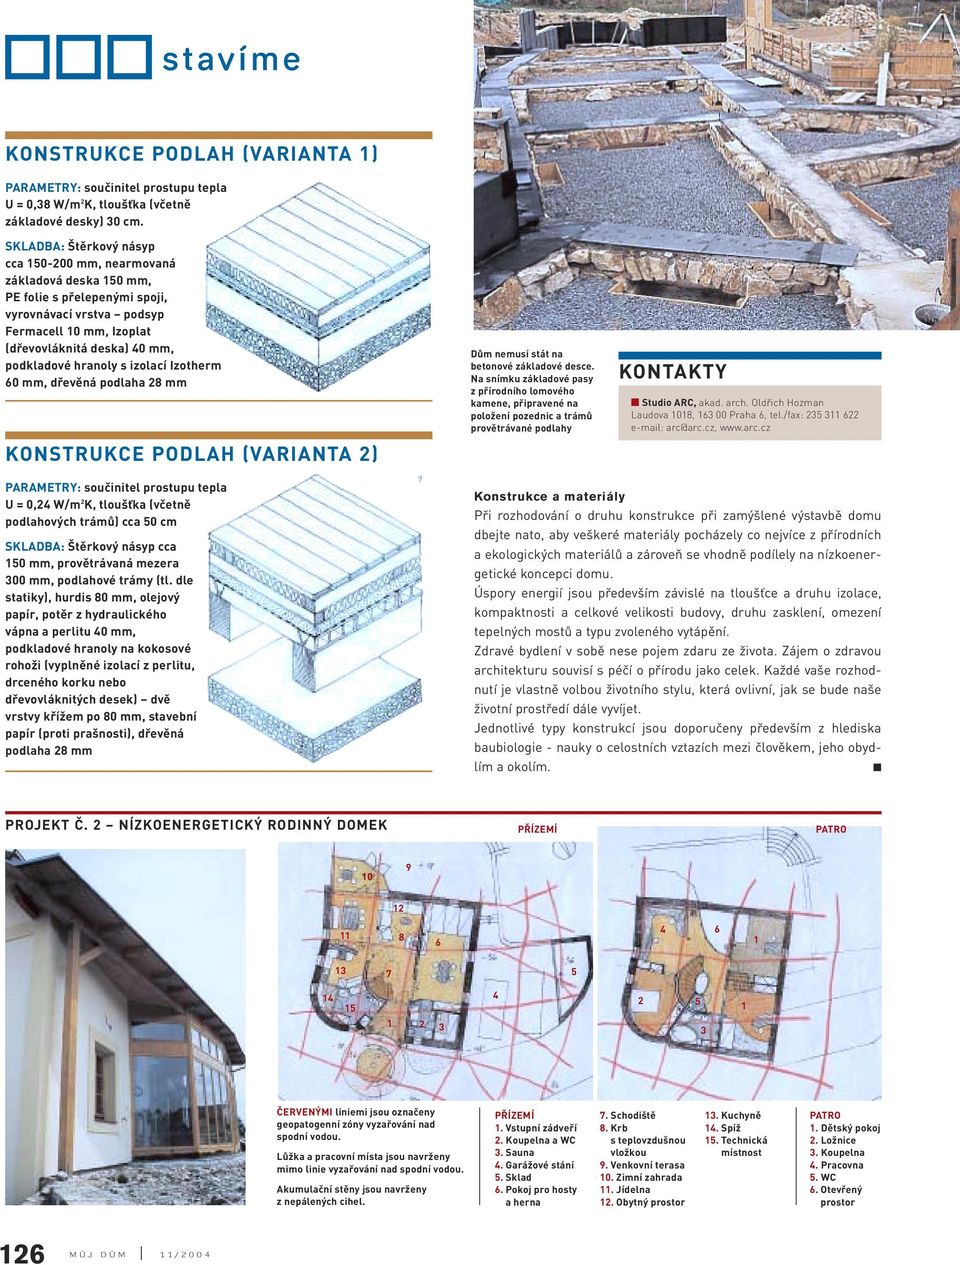 izolací Izotherm 60 mm, dřevěná podlaha 8 mm KONSTRUKCE PODLAH (VARIANTA ) Dům nemusí stát na betonové základové desce.